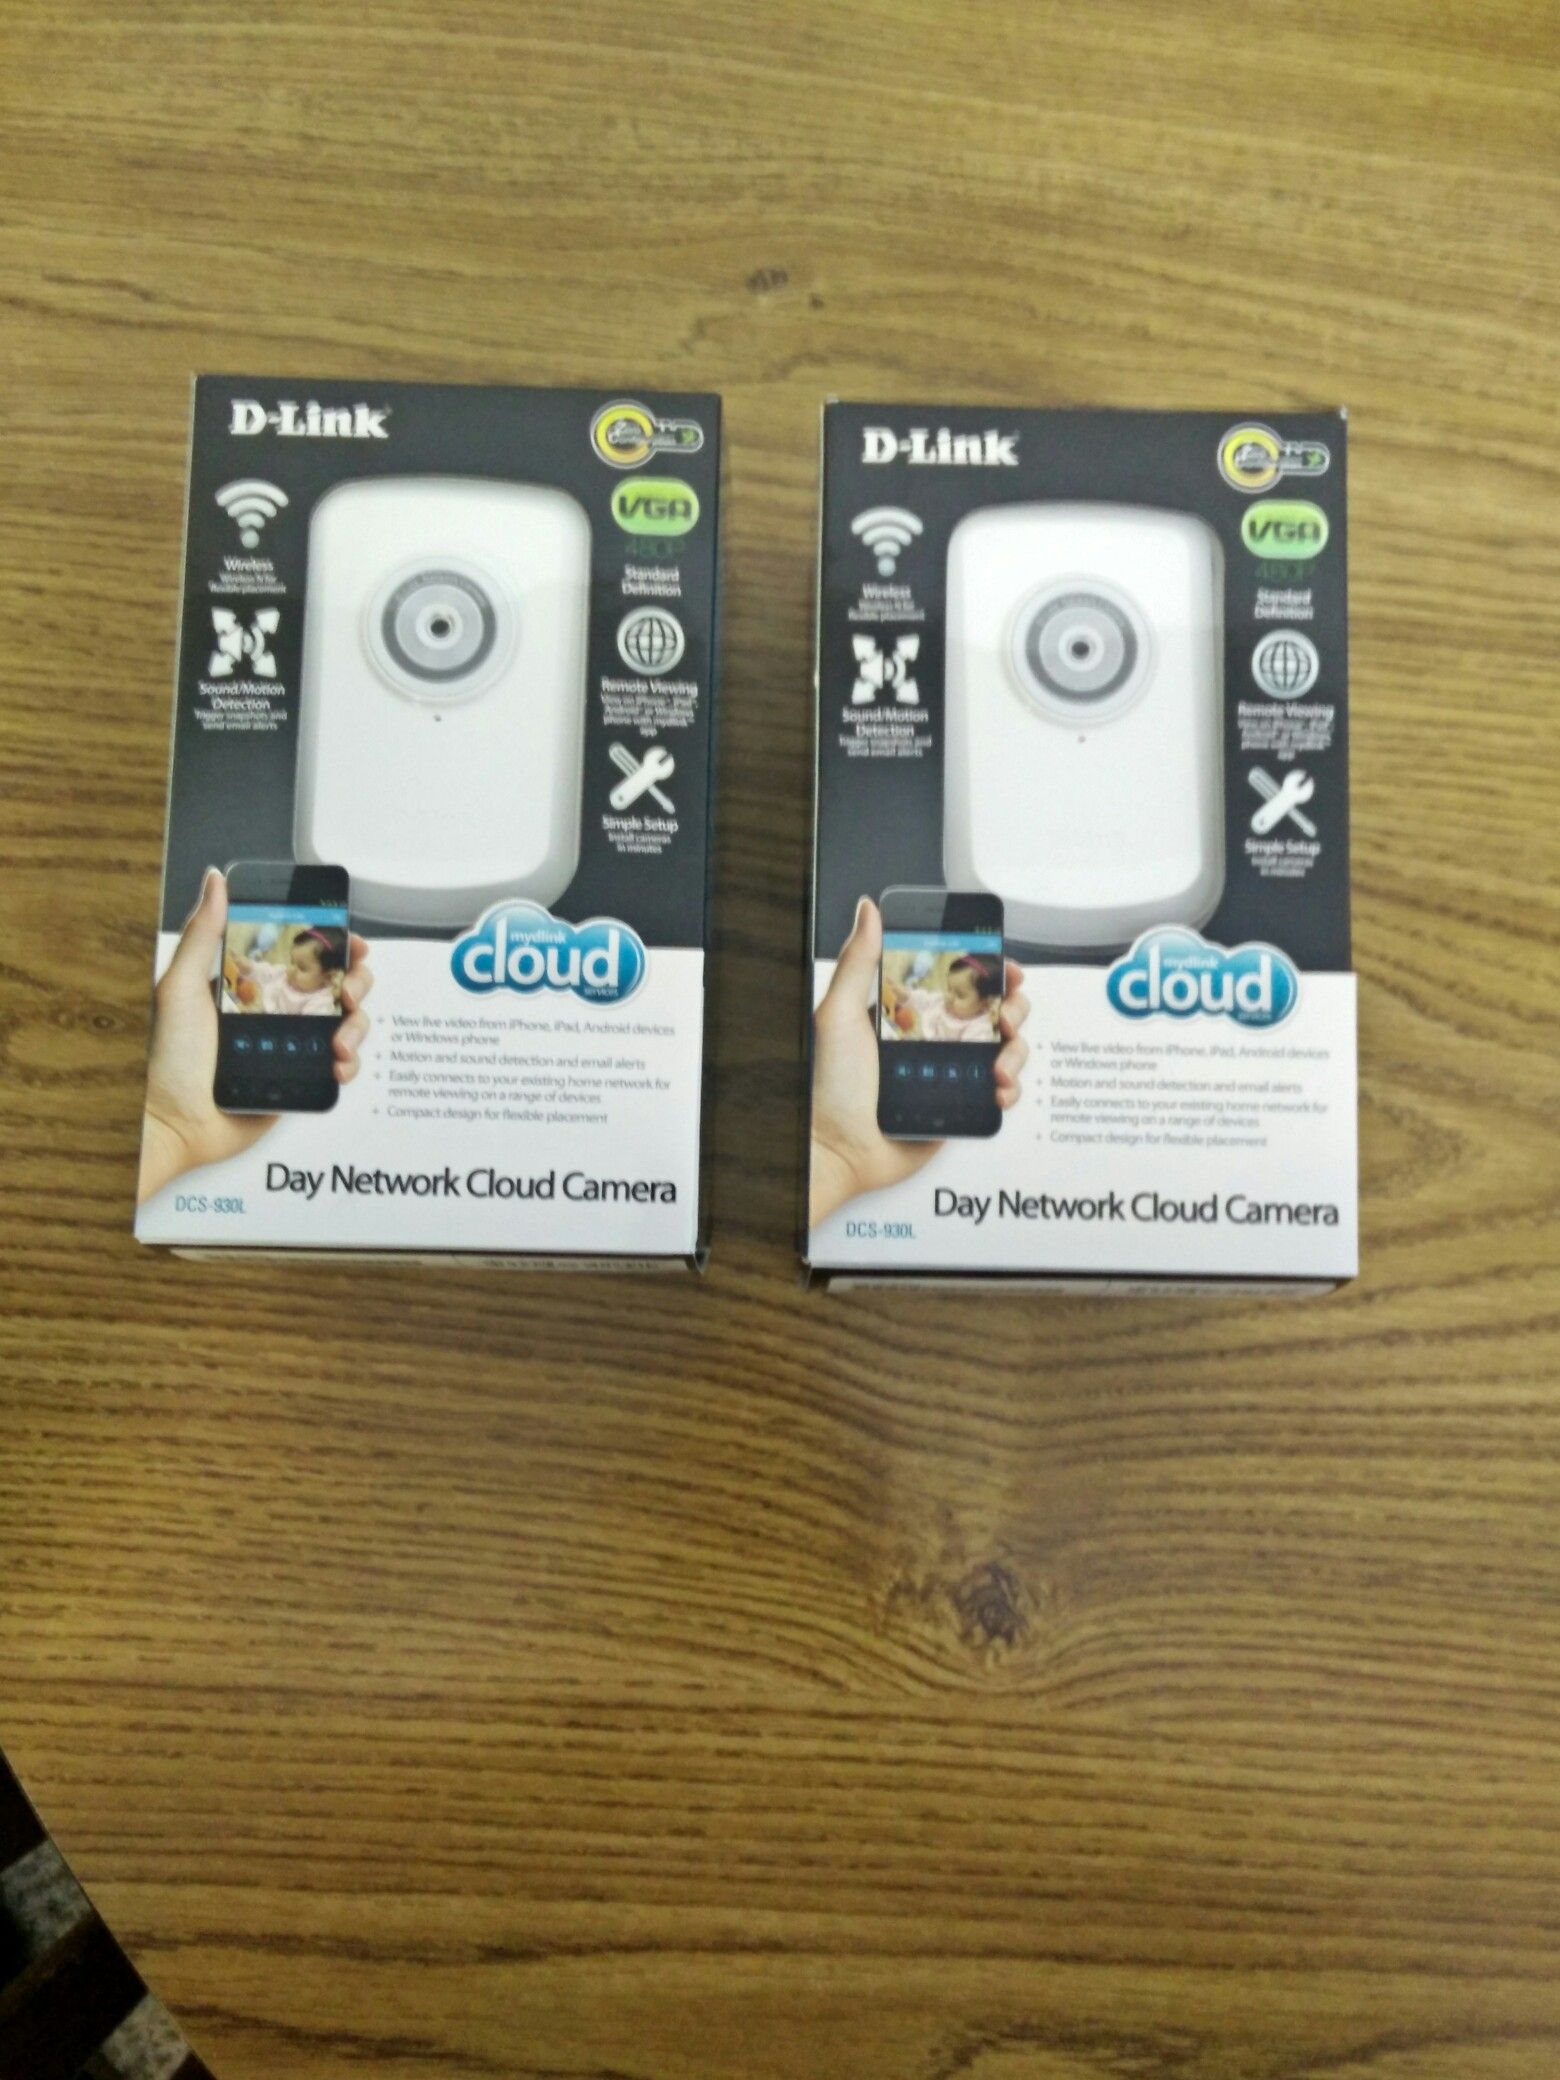 D-link WiFi cameras $15